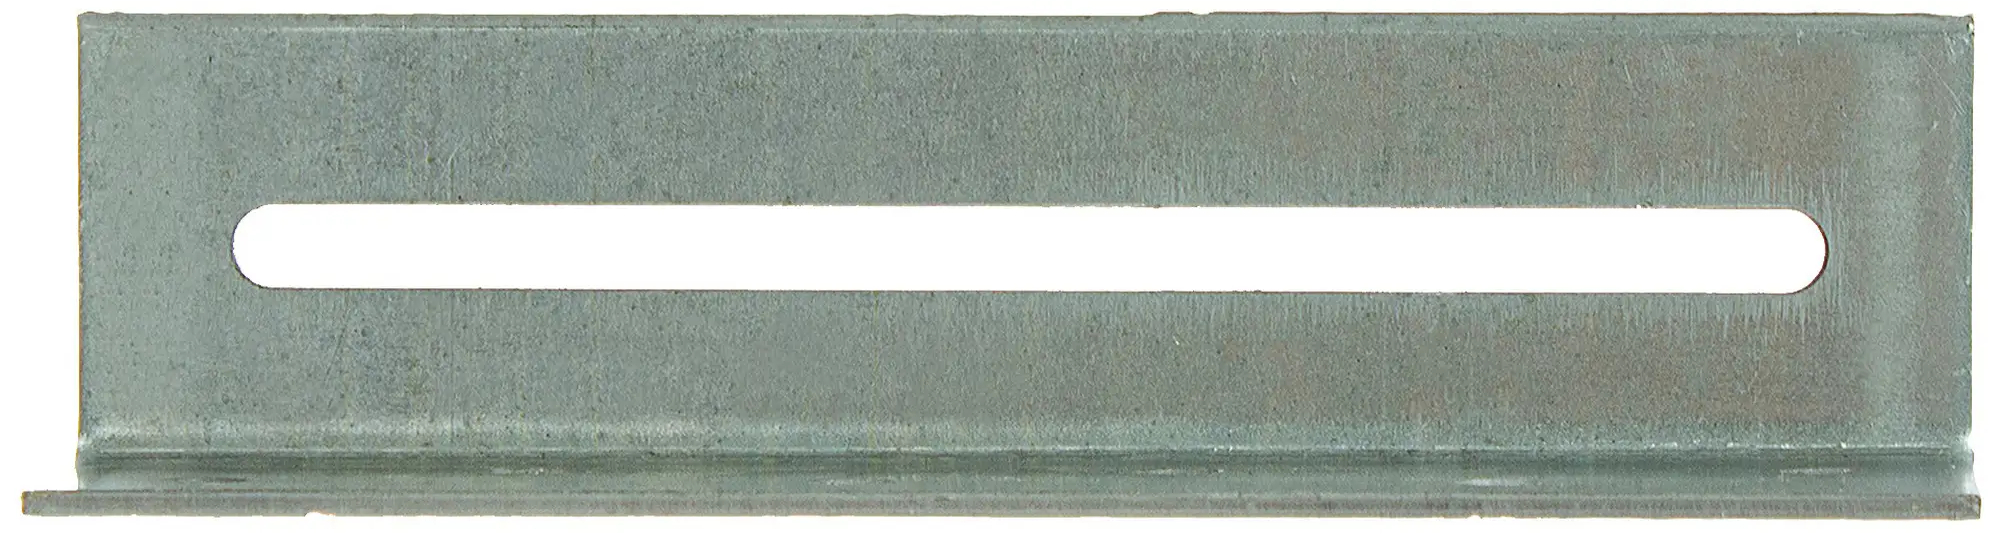 Уголок крепежный скользящий 30х30х120х2 мм KUC, оцинкованная сталь - фото